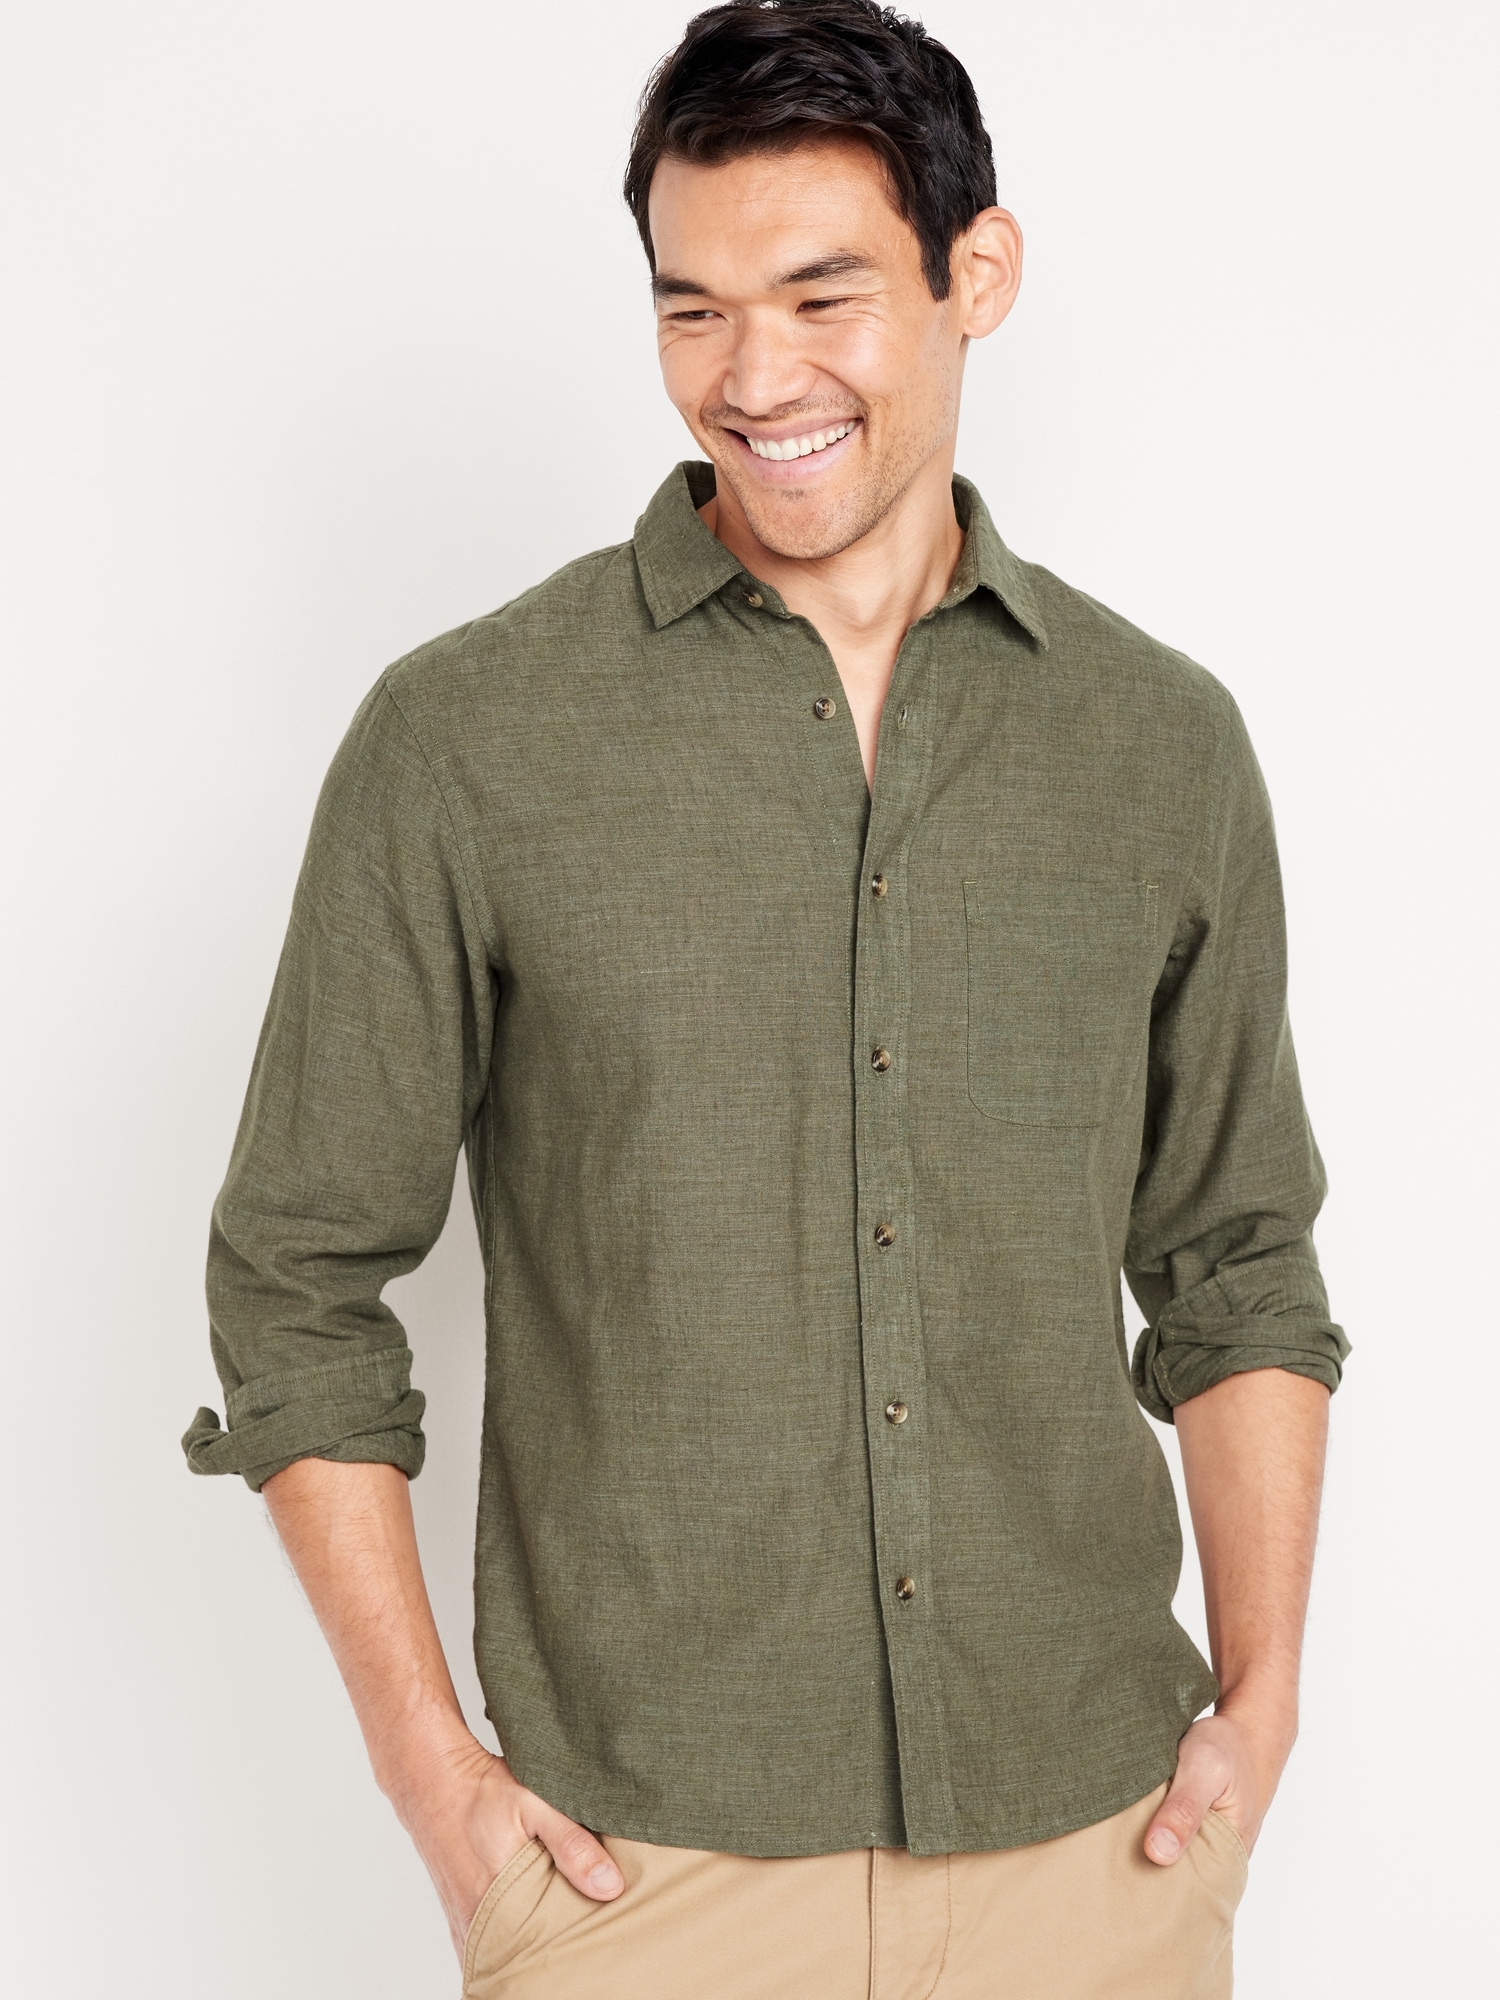 Men's Linen Shirt Summer Shirt Beach Shirt Blue Green Khaki Long